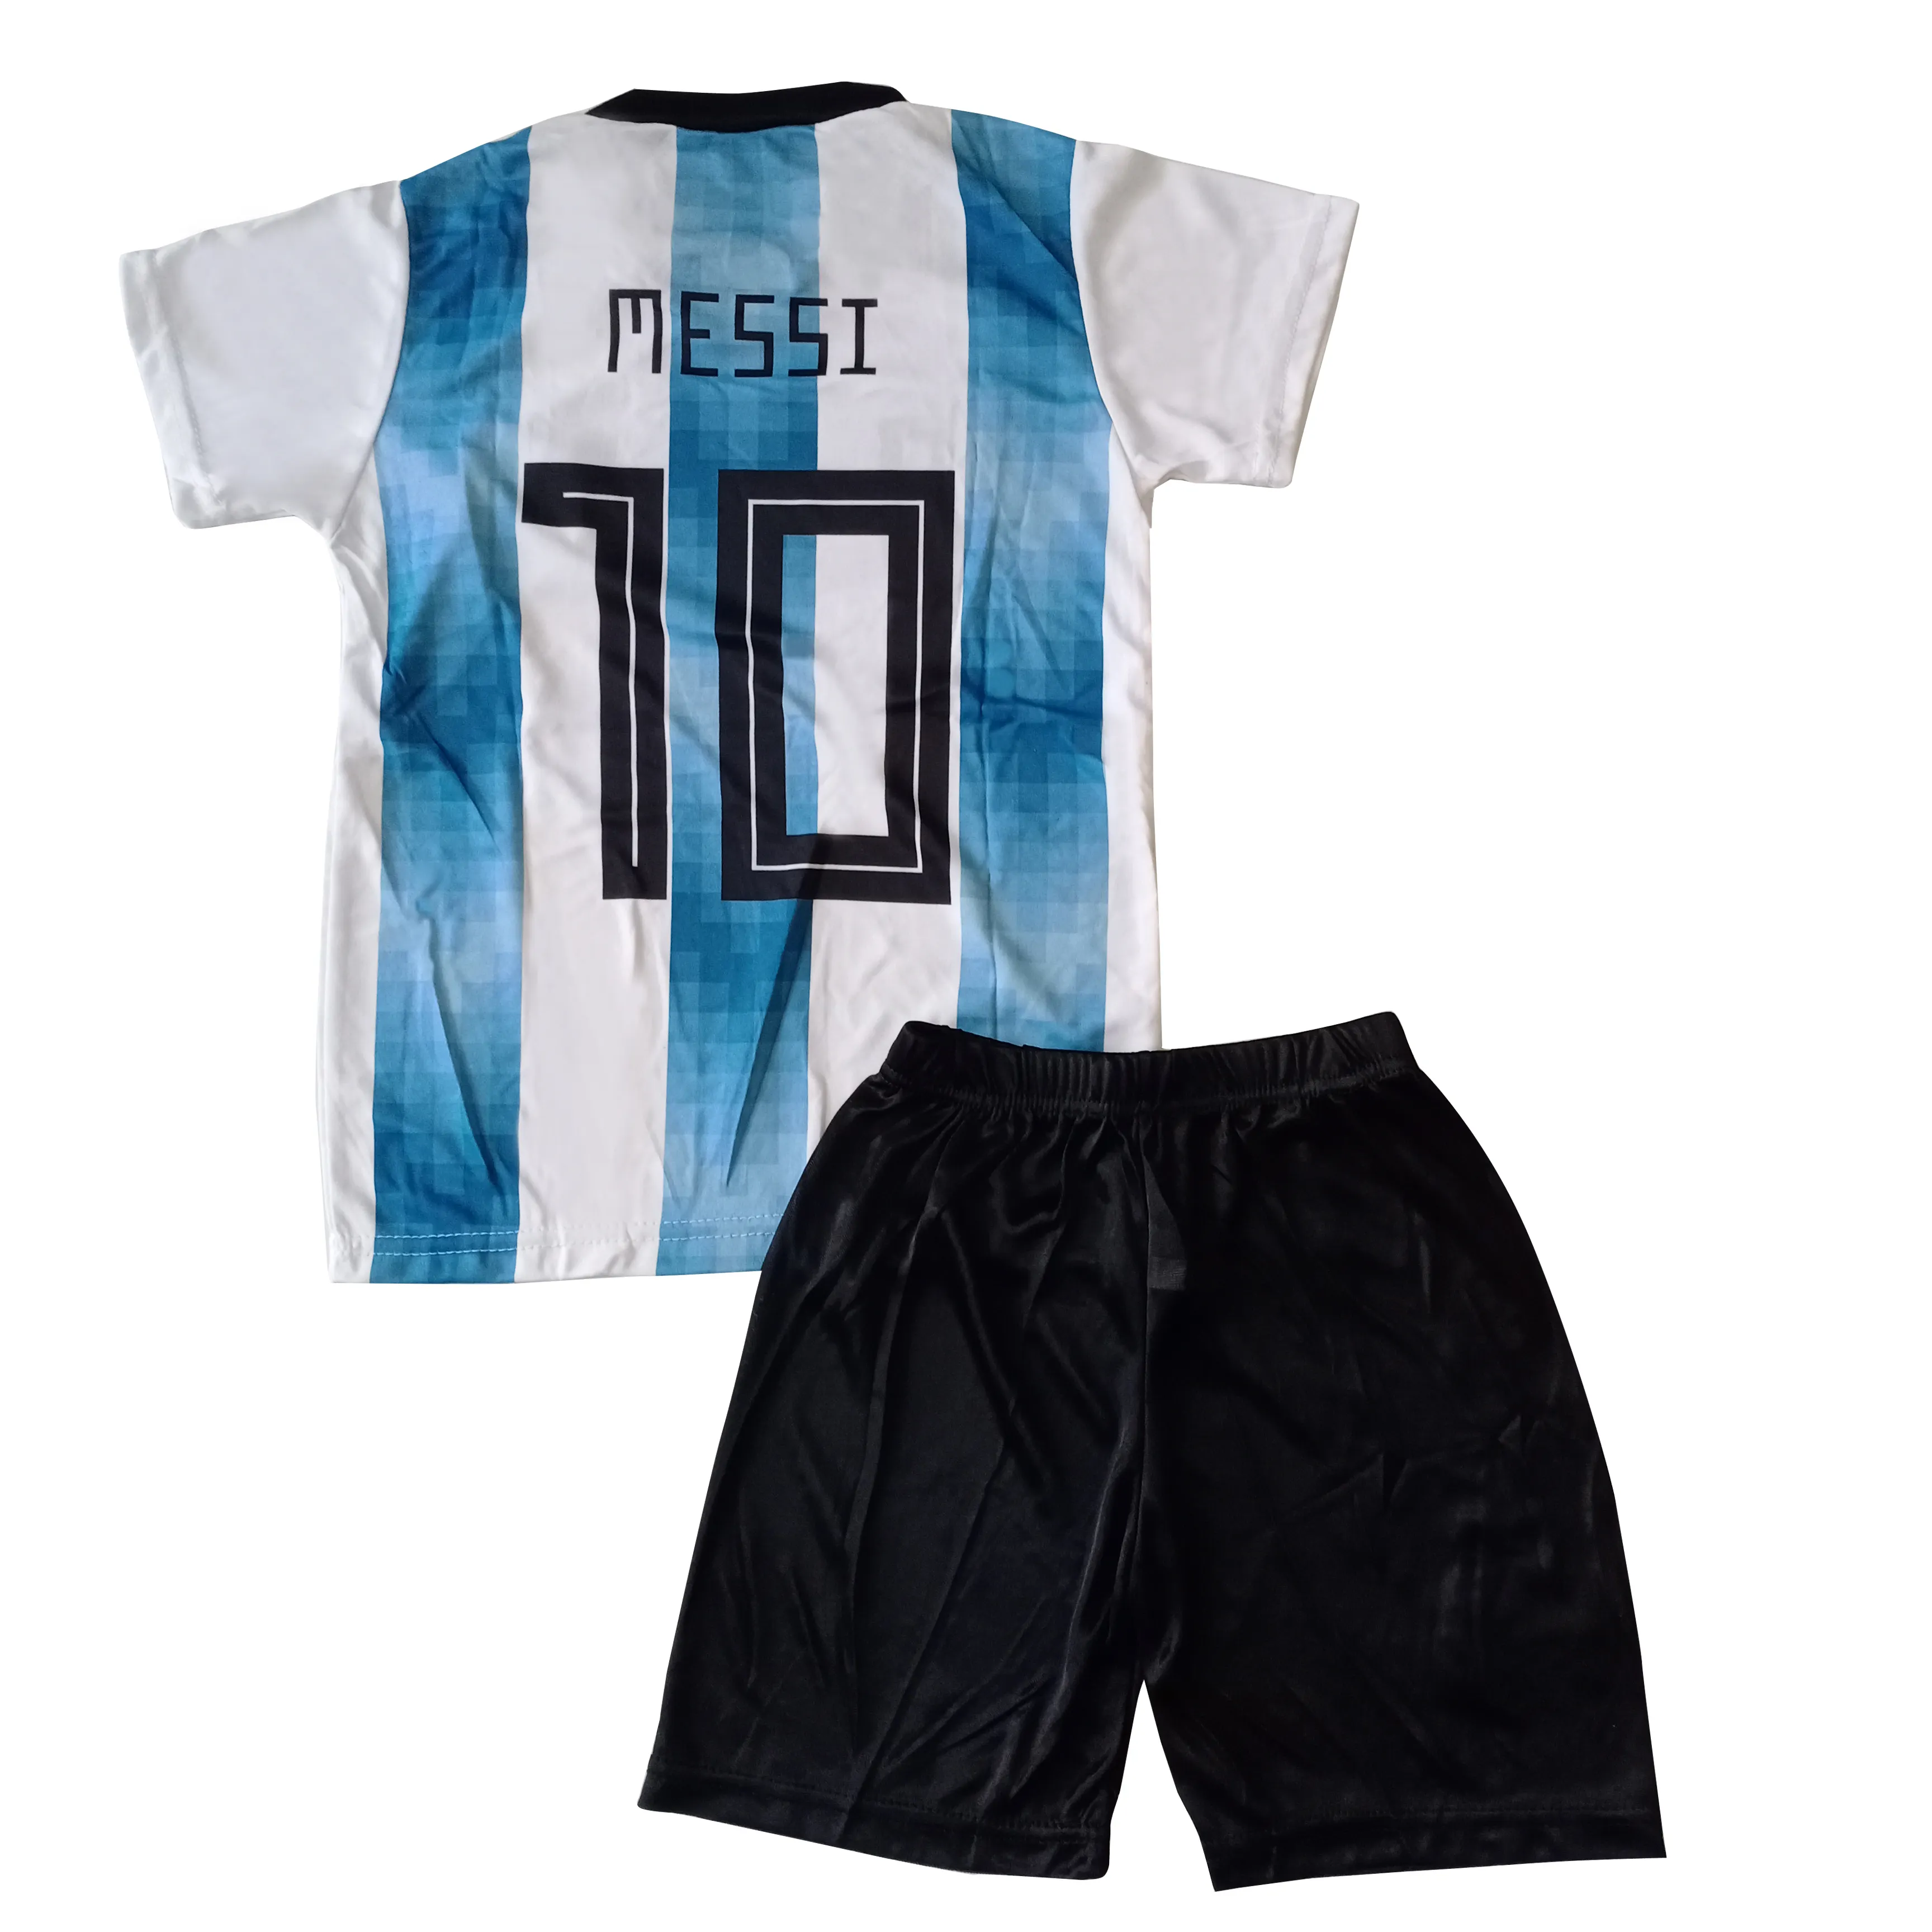 Uniformes de Football pour enfants, vente en gros, uniformes de Jersey d'équipe de Football bon marché pour garçons, uniformes d'entraînement de Sport de Football